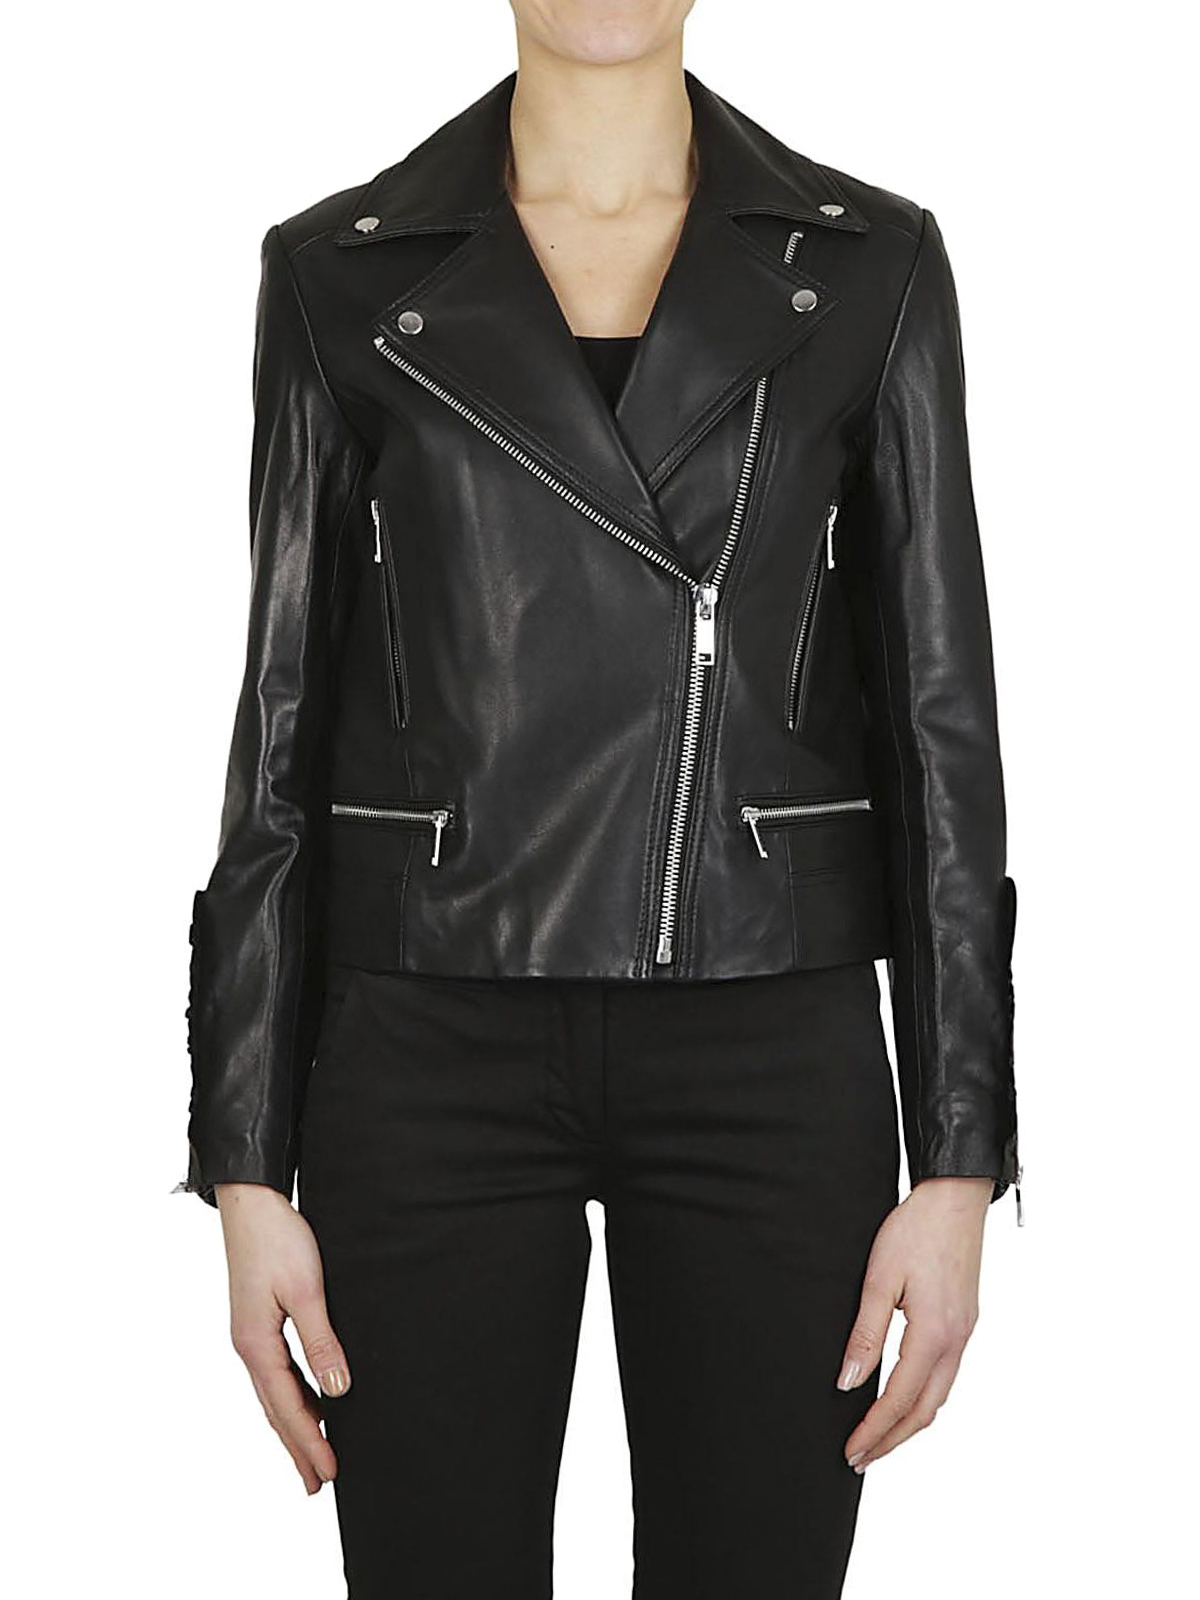 Leather jacket Michael Kors - Ruched leather biker jacket - MH72HTK8FX001